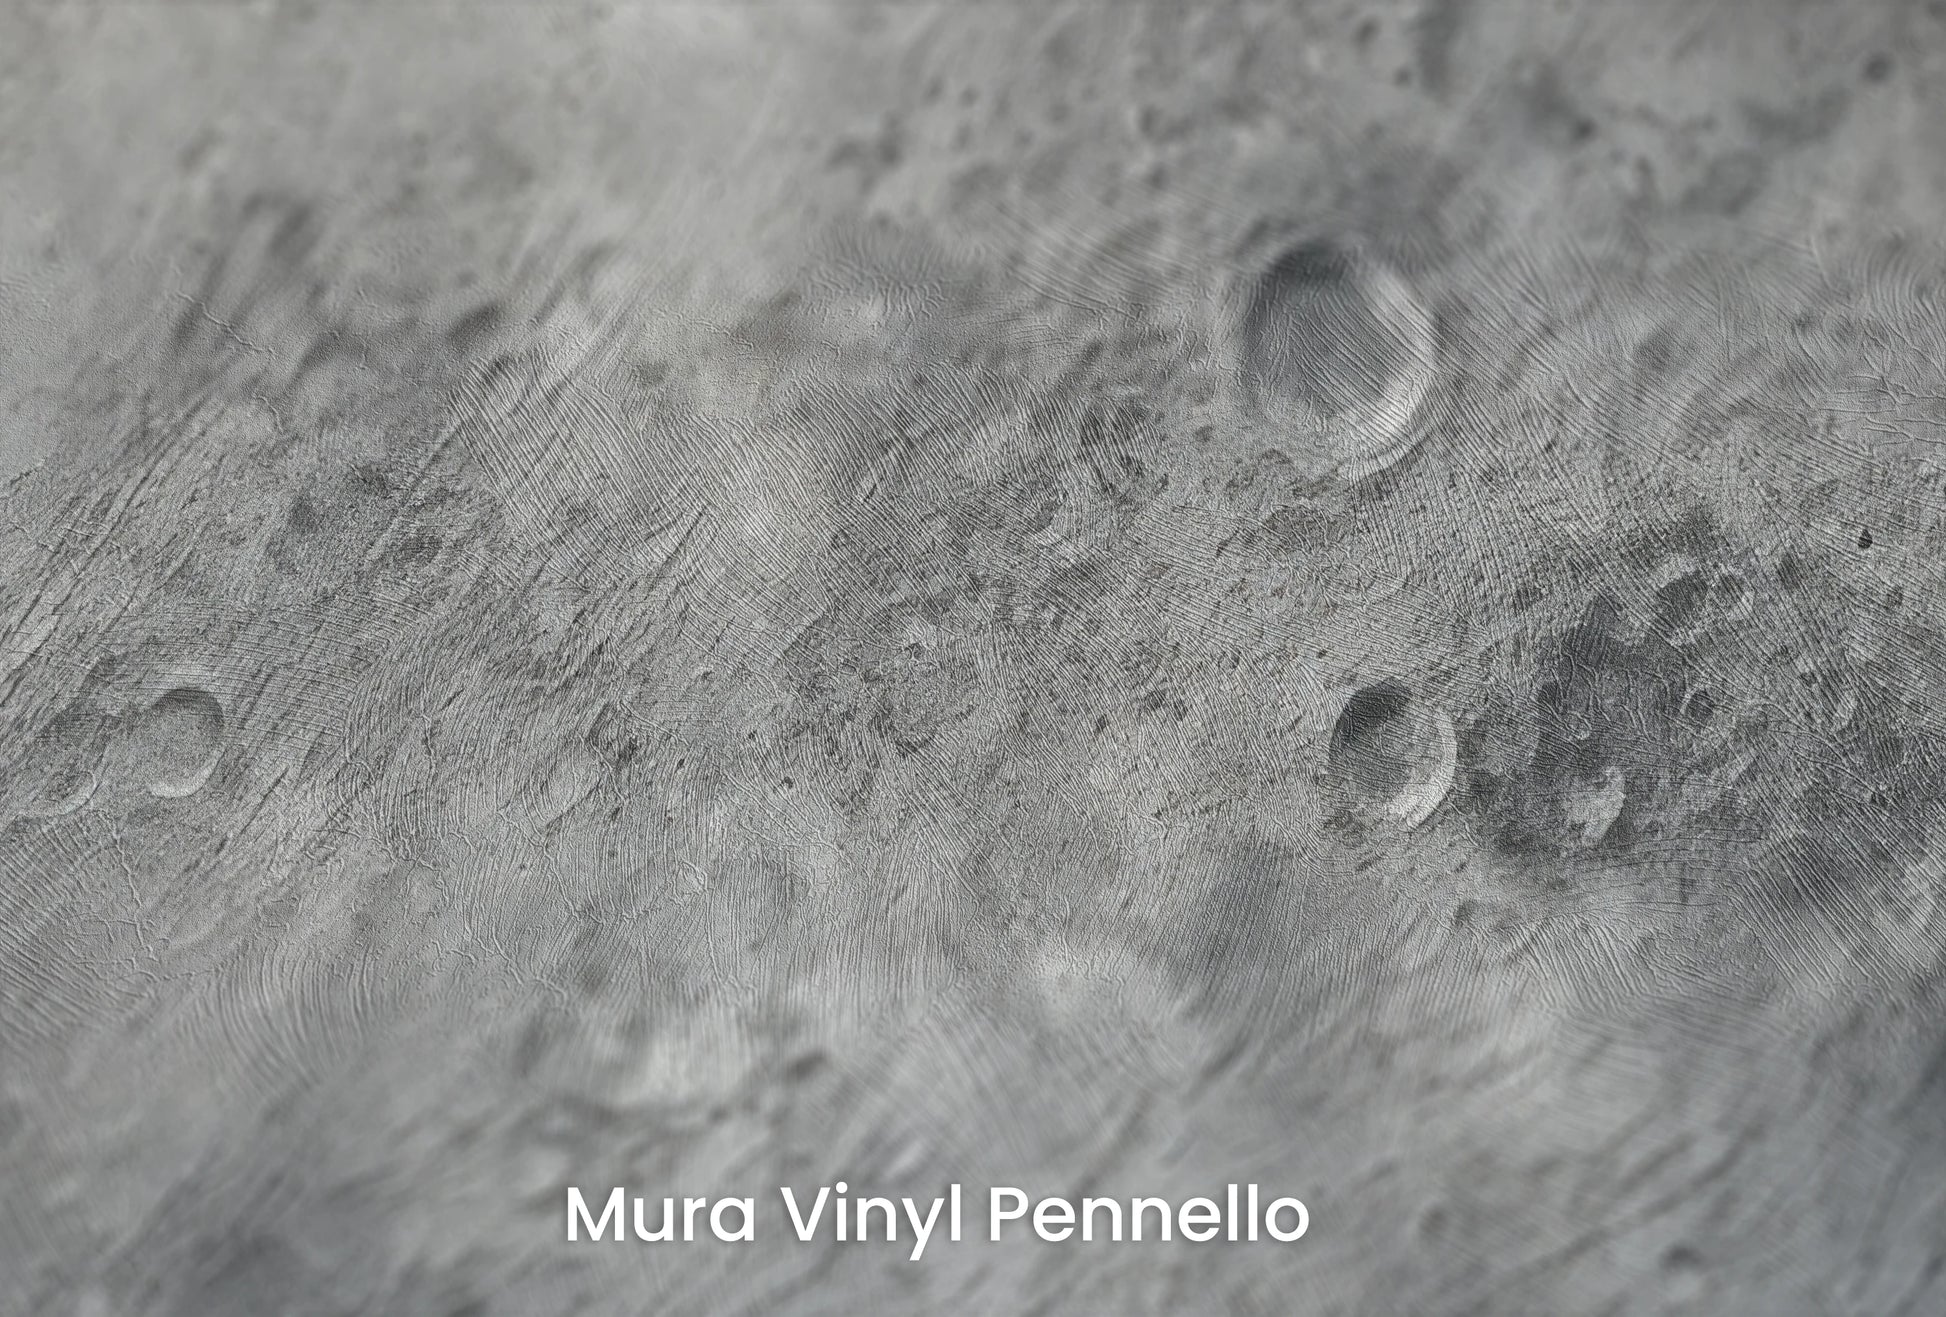 Zbliżenie na artystyczną fototapetę o nazwie Lunar Majesty na podłożu Mura Vinyl Pennello - faktura pociągnięć pędzla malarskiego.